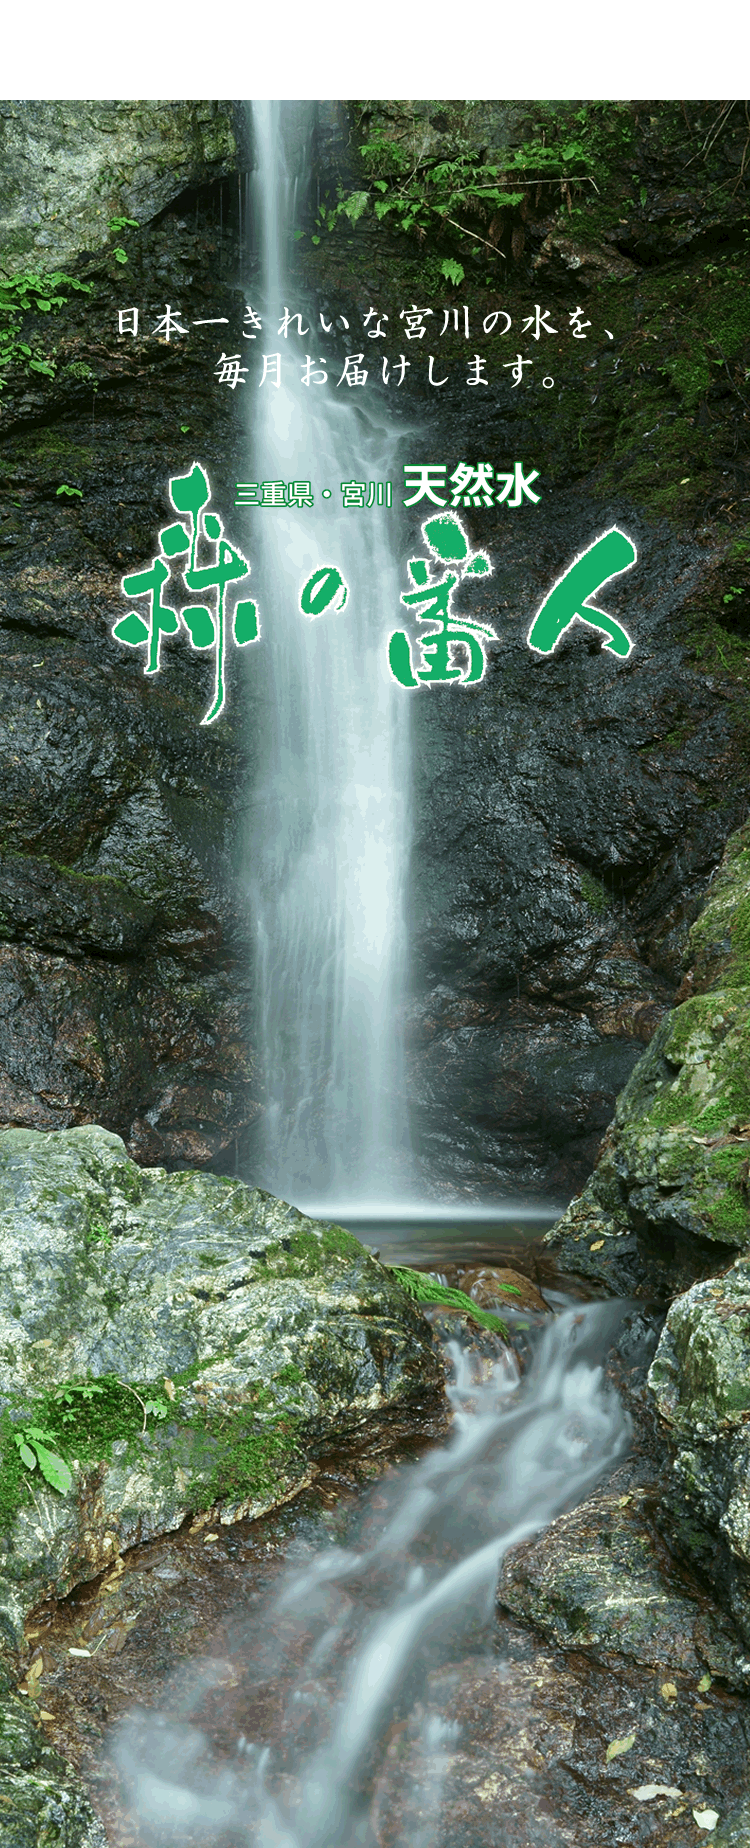 日本一きれいな宮川の天然水「森の番人」